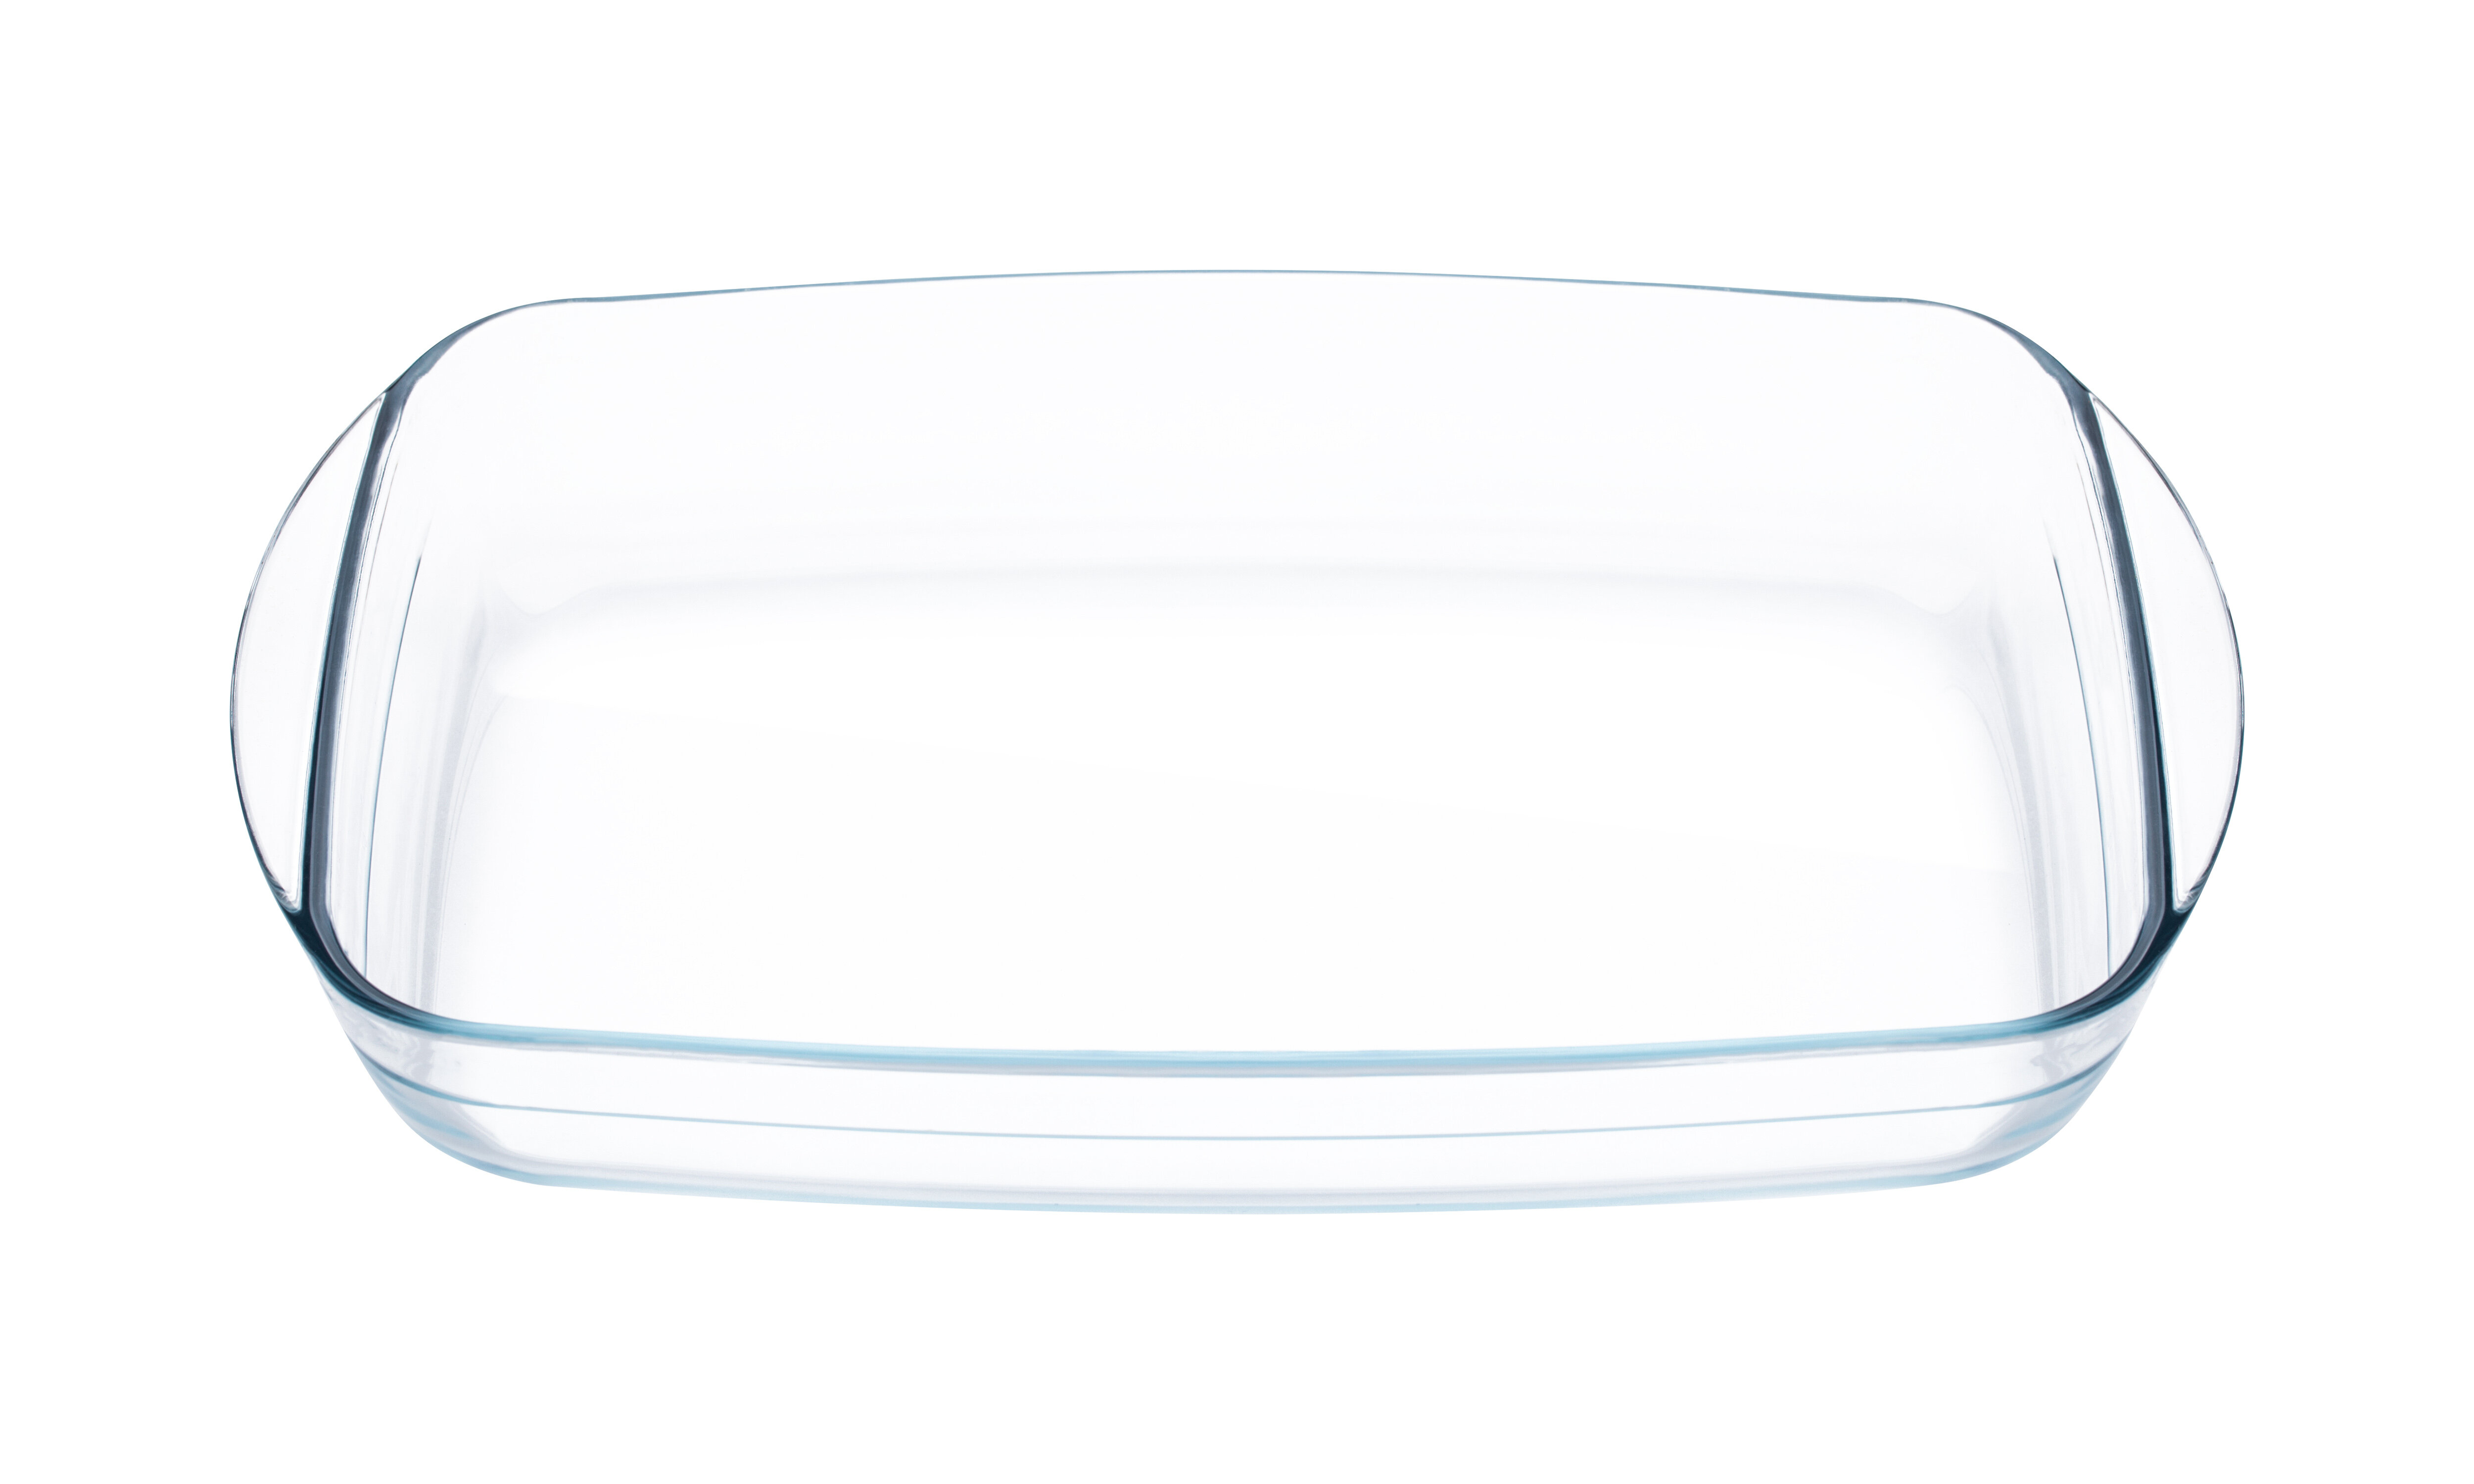 https://assets.wfcdn.com/im/38283188/compr-r85/1978/197816417/lexi-home-27-qt-glass-rectangular-baking-dish.jpg